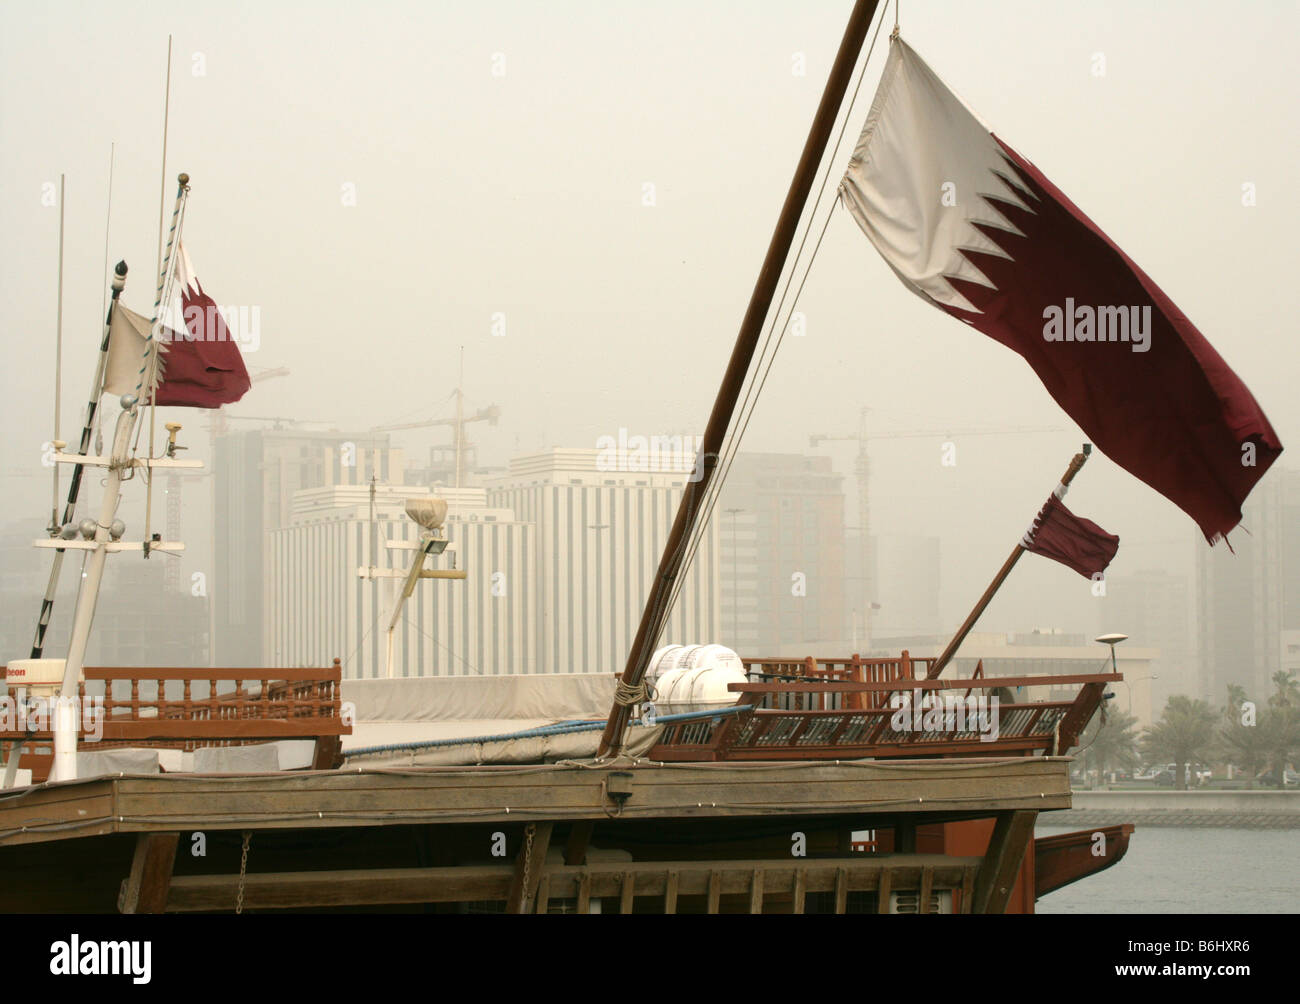 Qatari flags decorating traditional boats at Doha Bay, Qatar Stock Photo